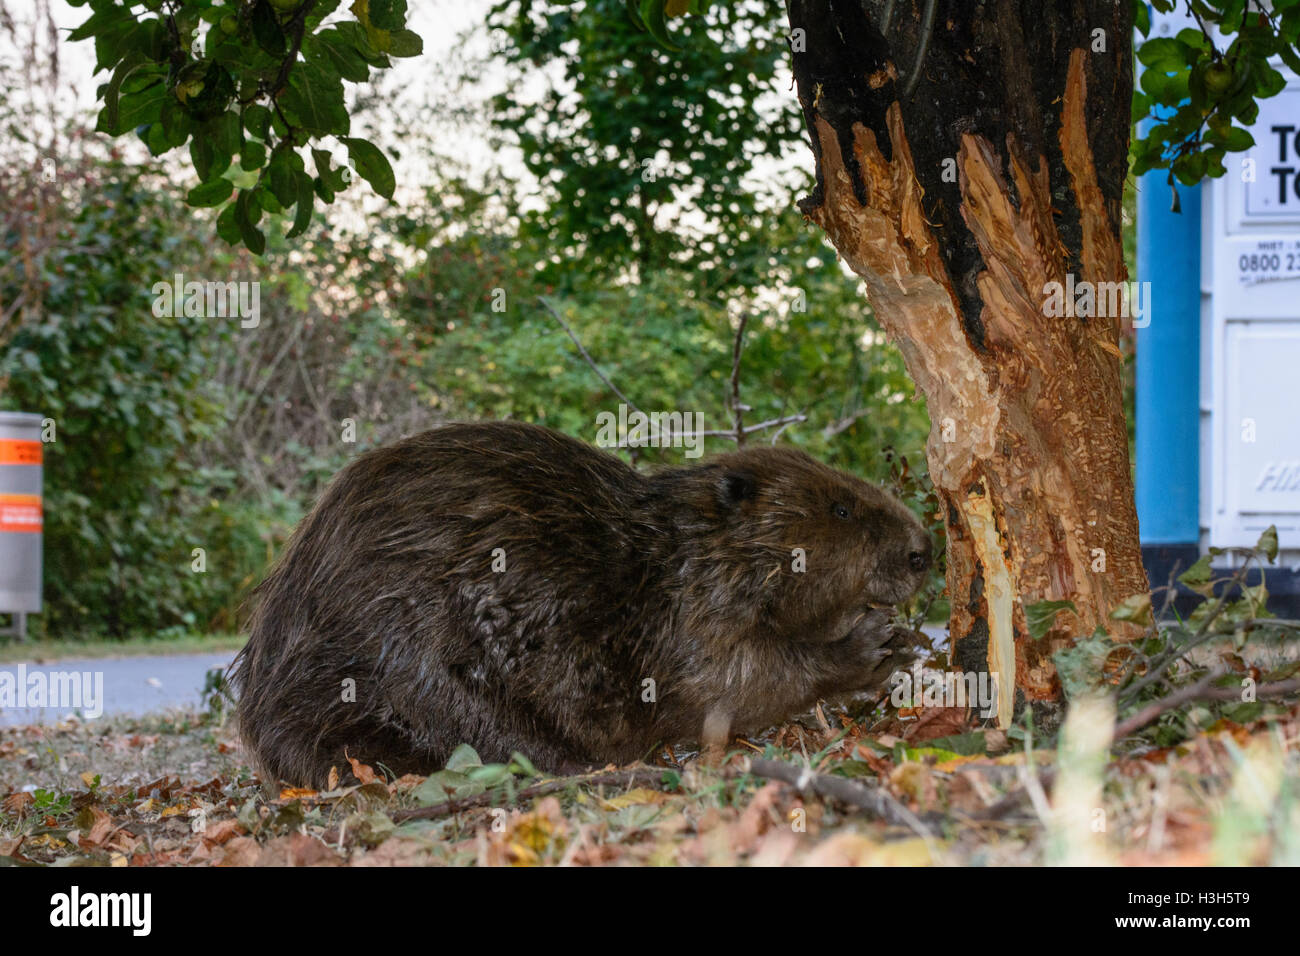 Wien, Vienne : castor européen (Castor fiber) est tombée à proximité d'arbres abattage au sentier (Alte Donau Vieux Danube), 22, Vienne,. Banque D'Images